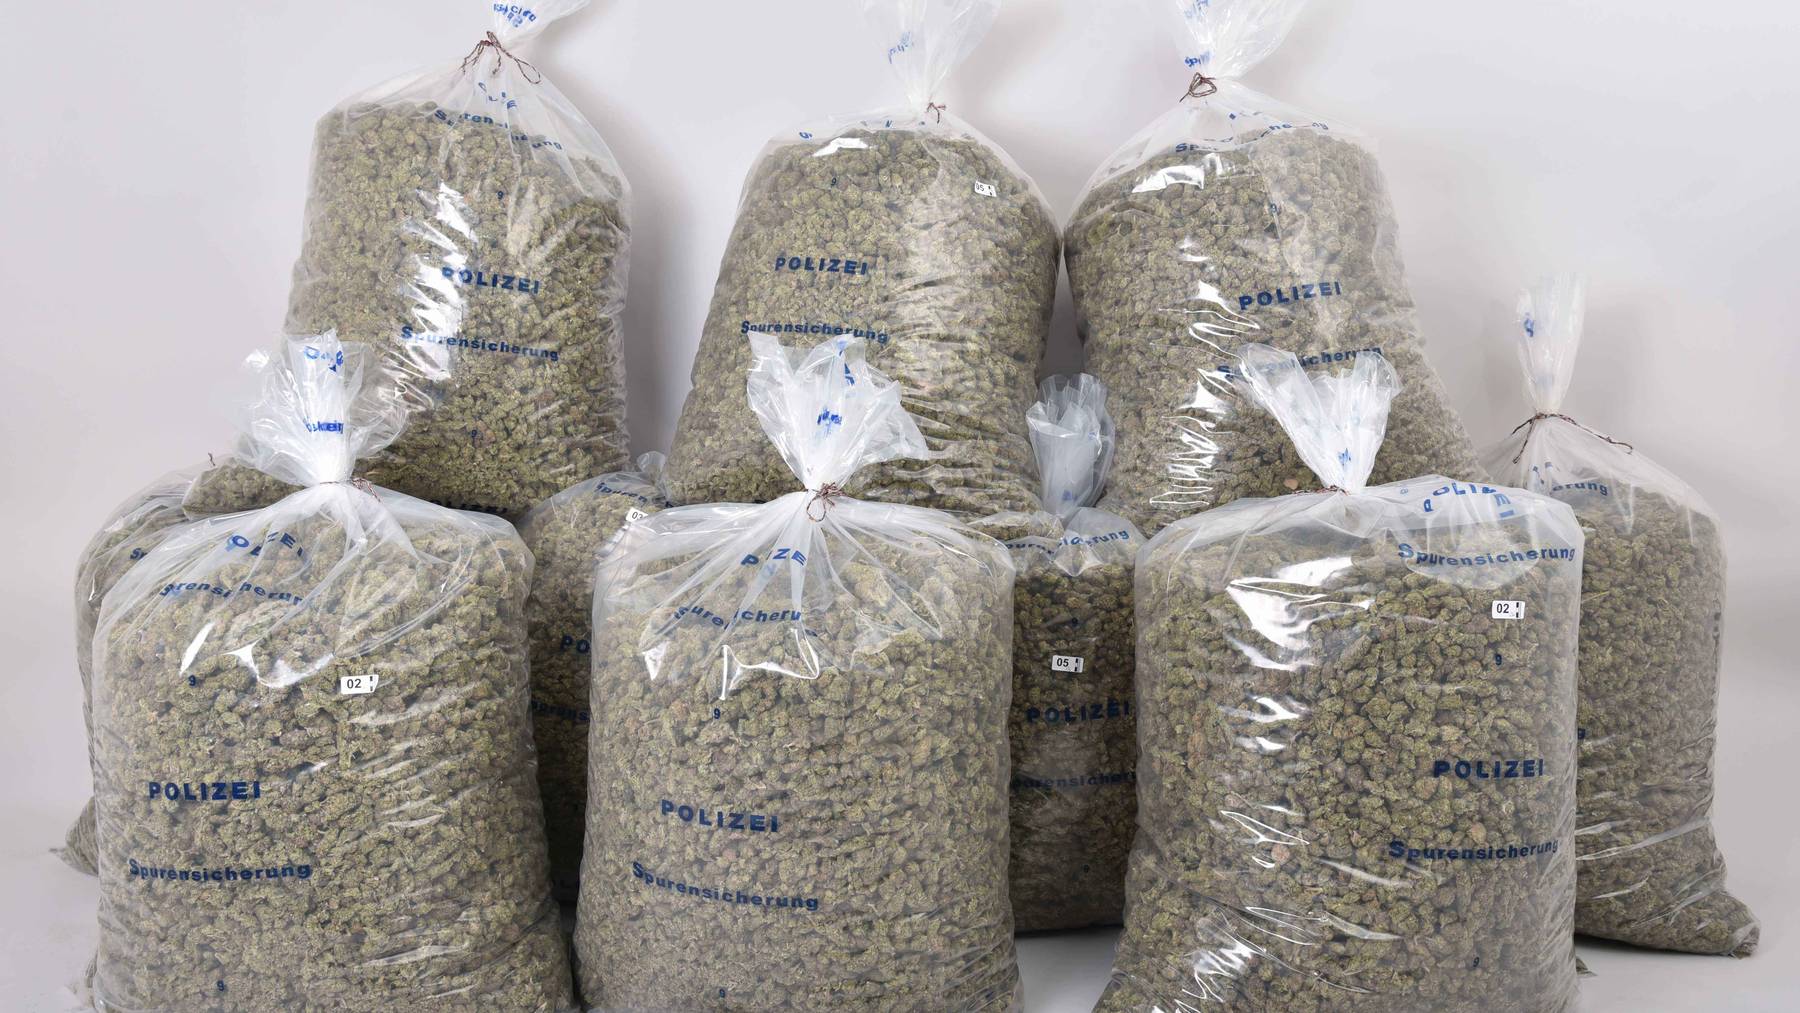 90 Kilogramm Marihuana in Möbeln versteckt